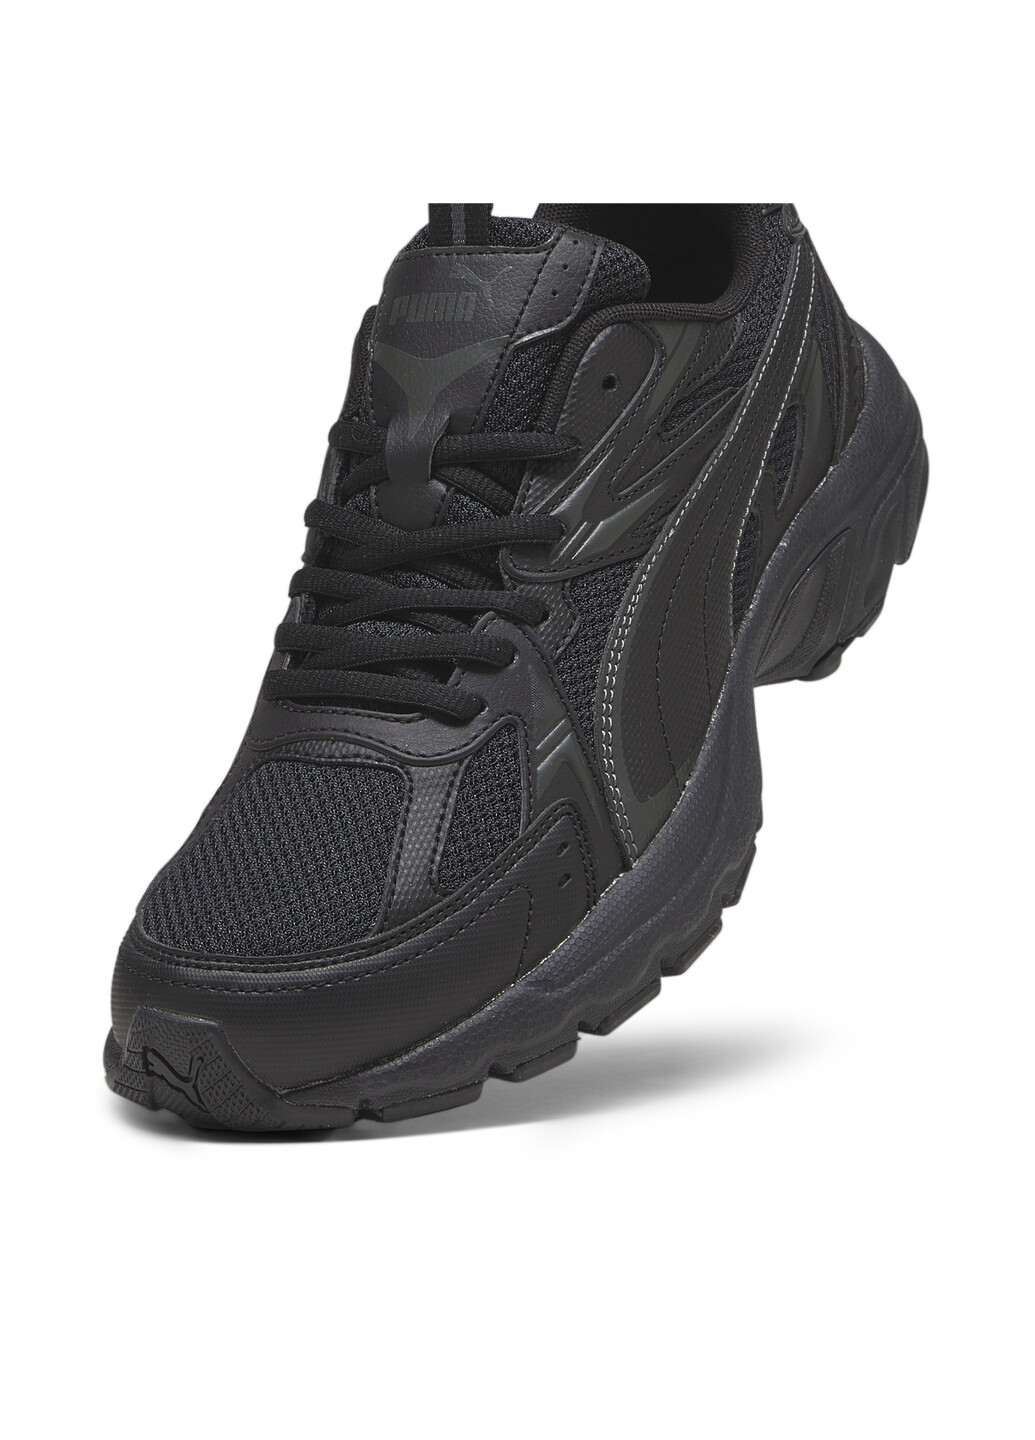 Черные кроссовки milenio tech sneakers Puma